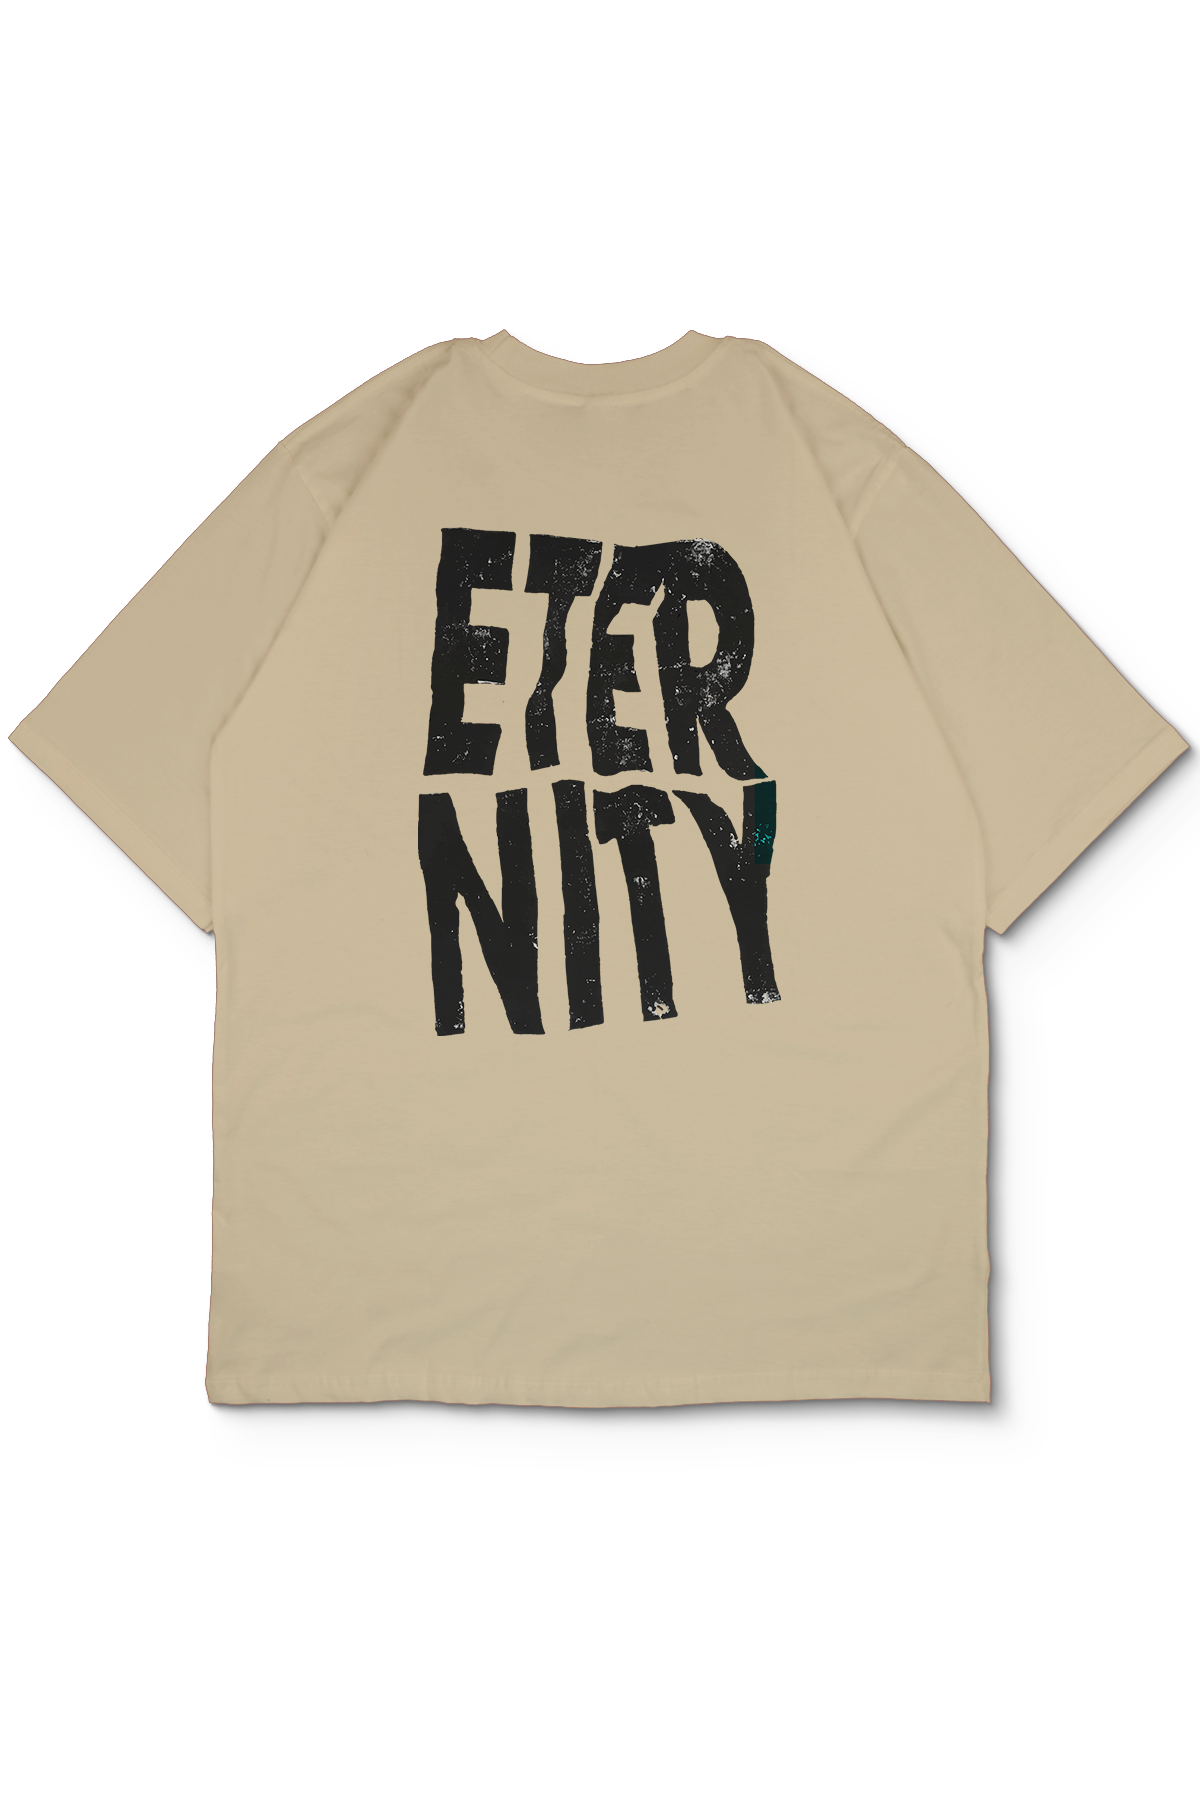 Eternity Oversize Erkek Tİşört